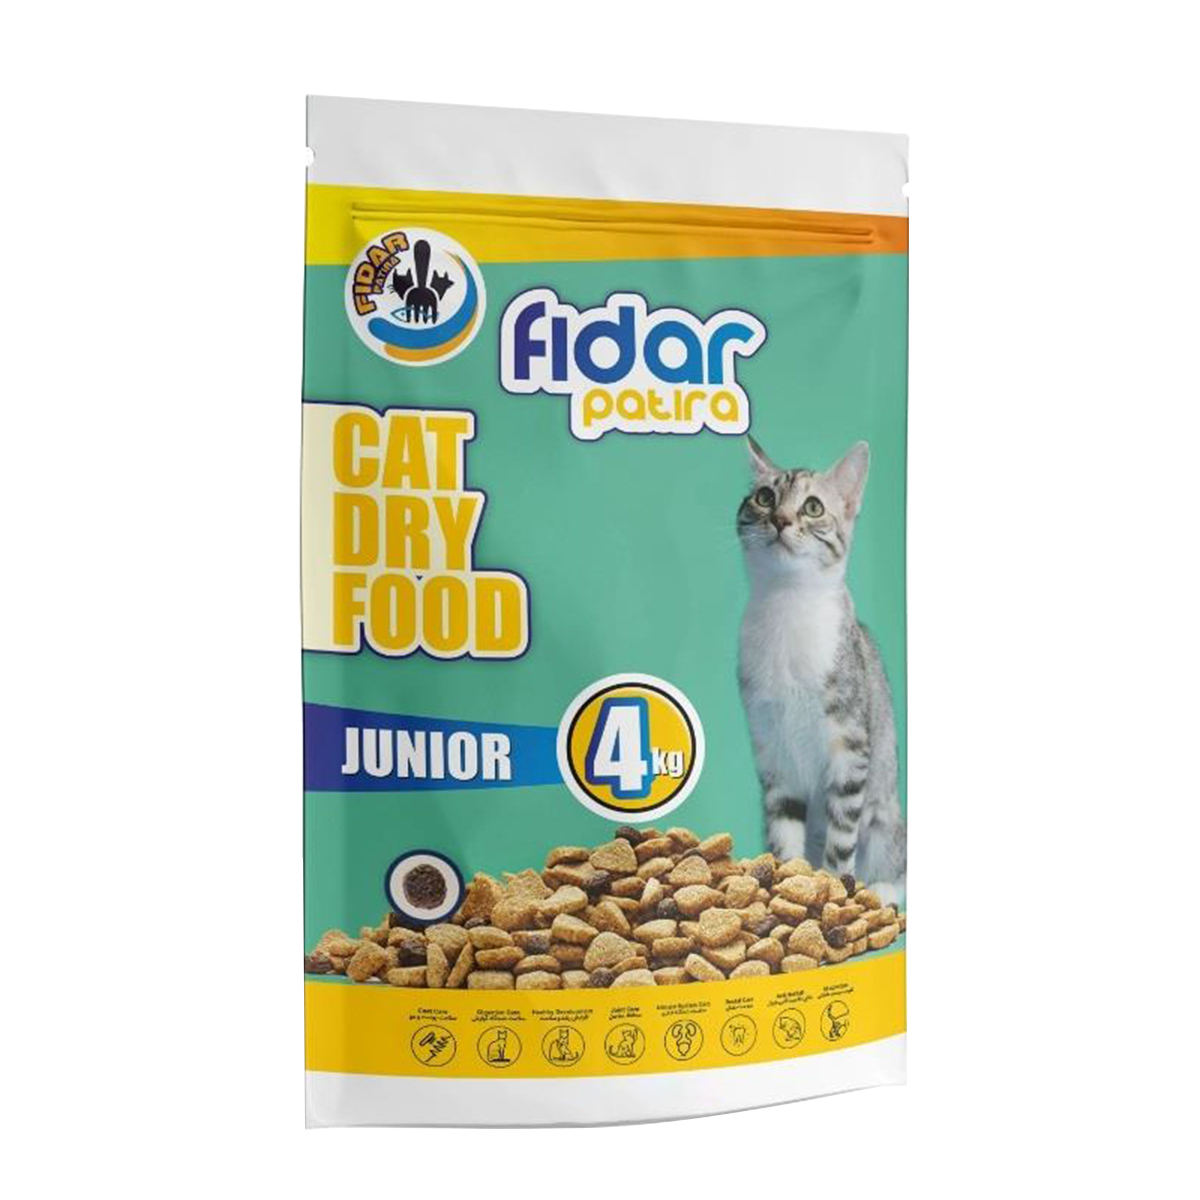 نقد و بررسی غذای خشک گربه فیدار پاتیرا مدل Junior 4 وزن 4 کیلوگرم توسط خریداران